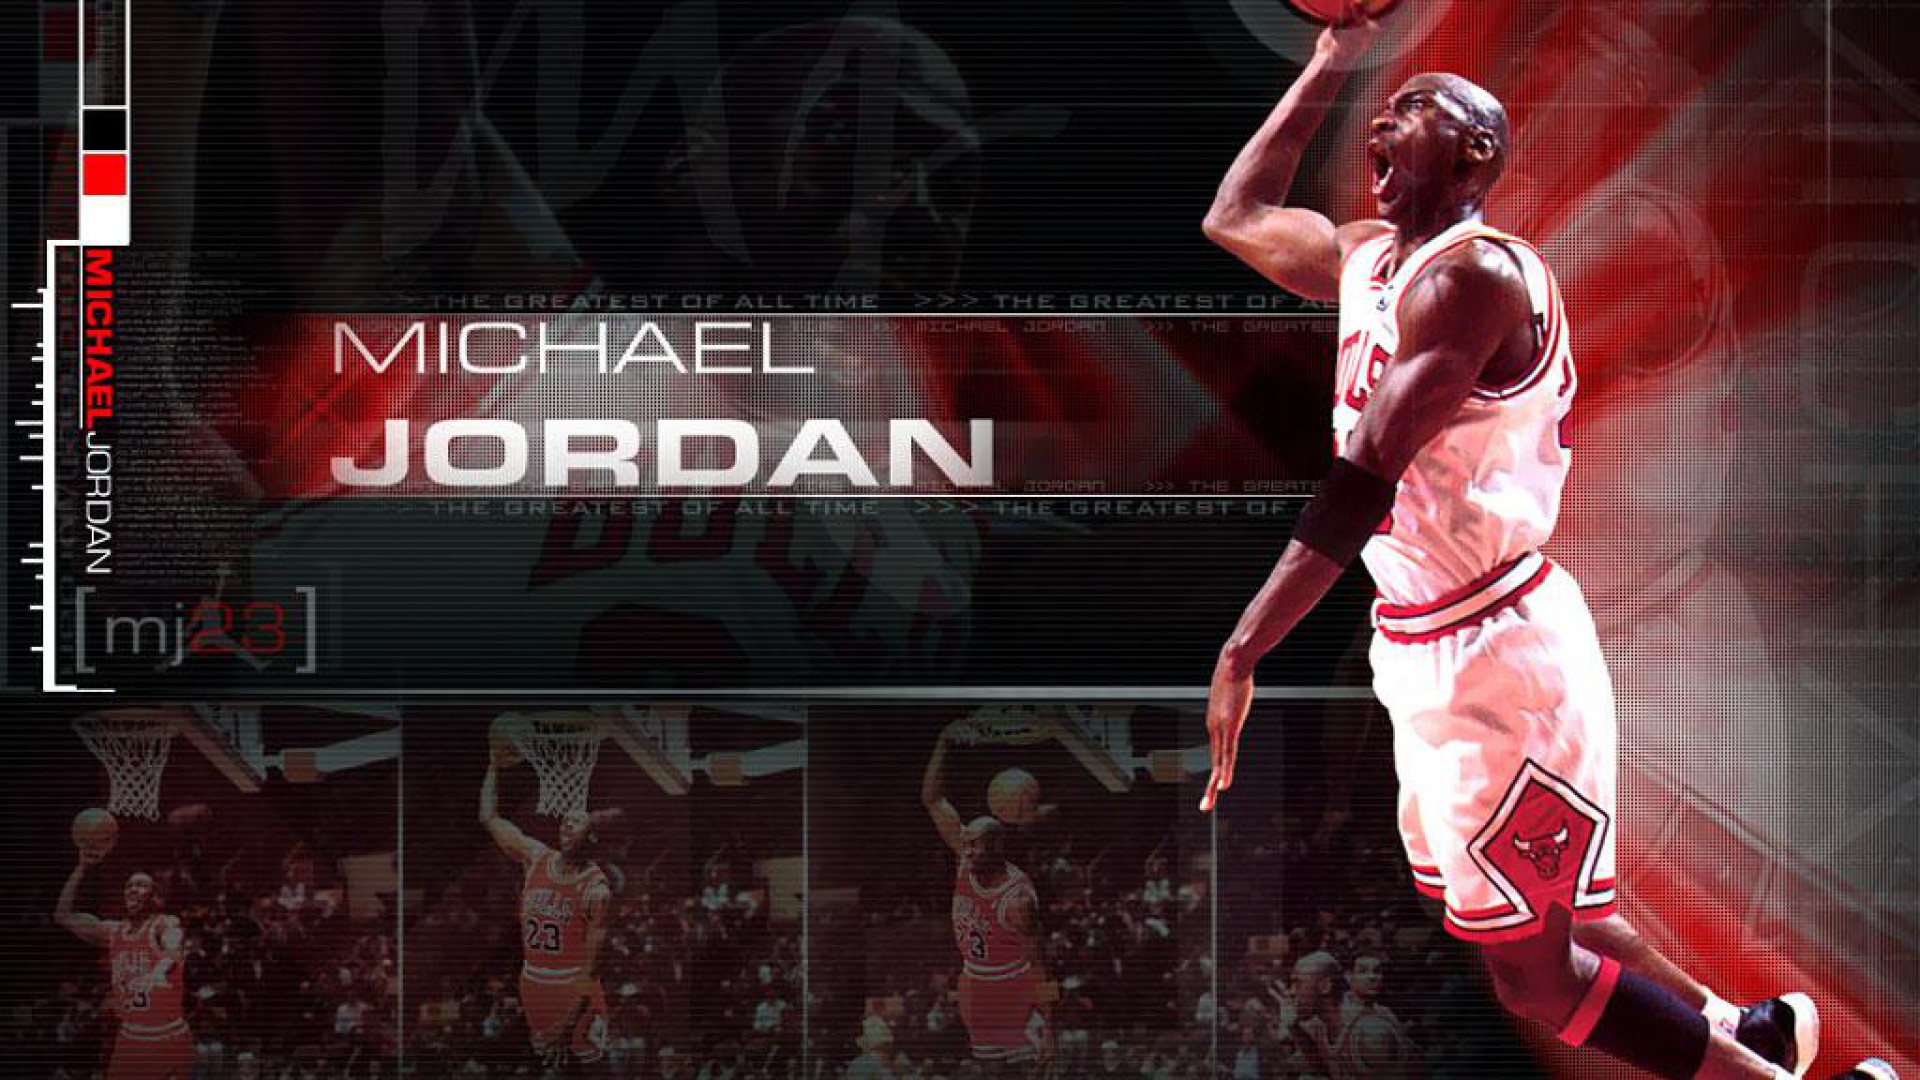 Michael Jordan Hd Wallpaper Hd Wallpapermonkey
air - Michael Jordan Dunk - HD Wallpaper 